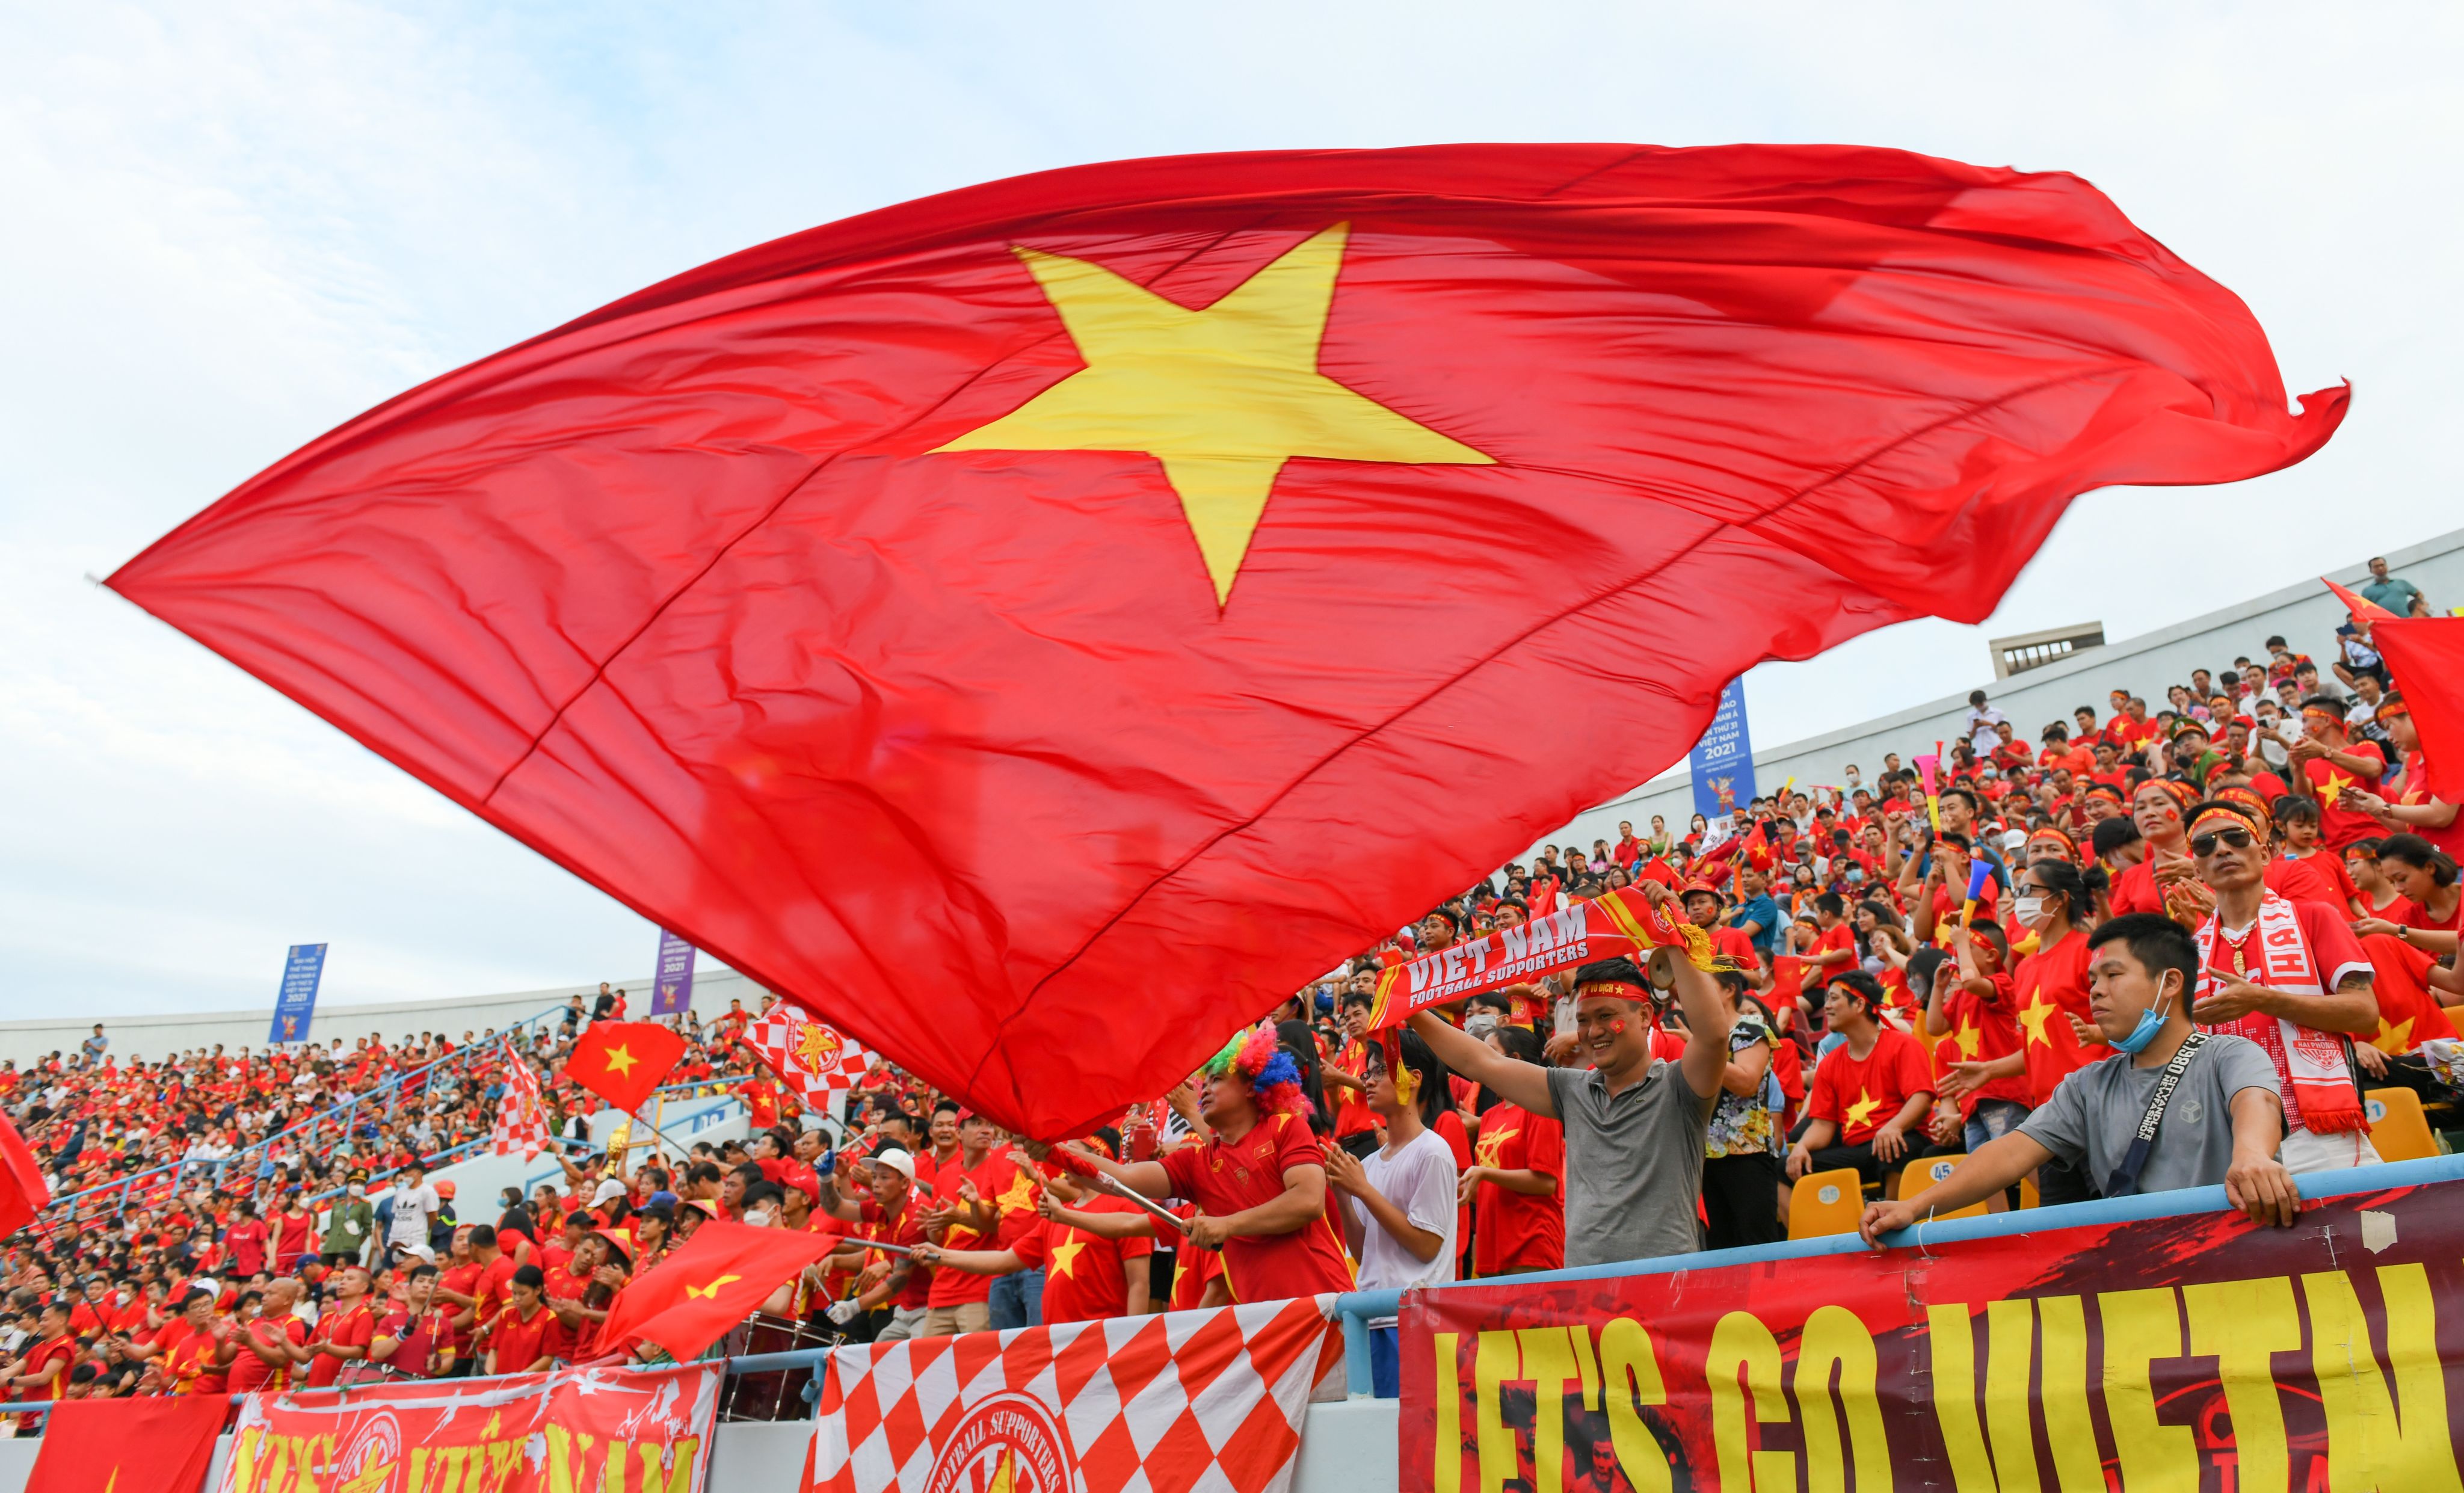 SEA Games 31: Cờ Việt Nam
Chào mừng SEA Games 31 sắp tới với môn thi đấu cờ Việt Nam! Cờ Việt Nam từ lâu đã là niềm tự hào của nền văn hóa Việt Nam với các phong cách độc đáo và đầy tinh thần. Điểm qua các sự kiện cờ nổi bật trong lịch sử Việt Nam, SEA Games 31 chắc chắn sẽ là một cơ hội tuyệt vời để các tuyển thủ Việt Nam thể hiện tài năng của mình.